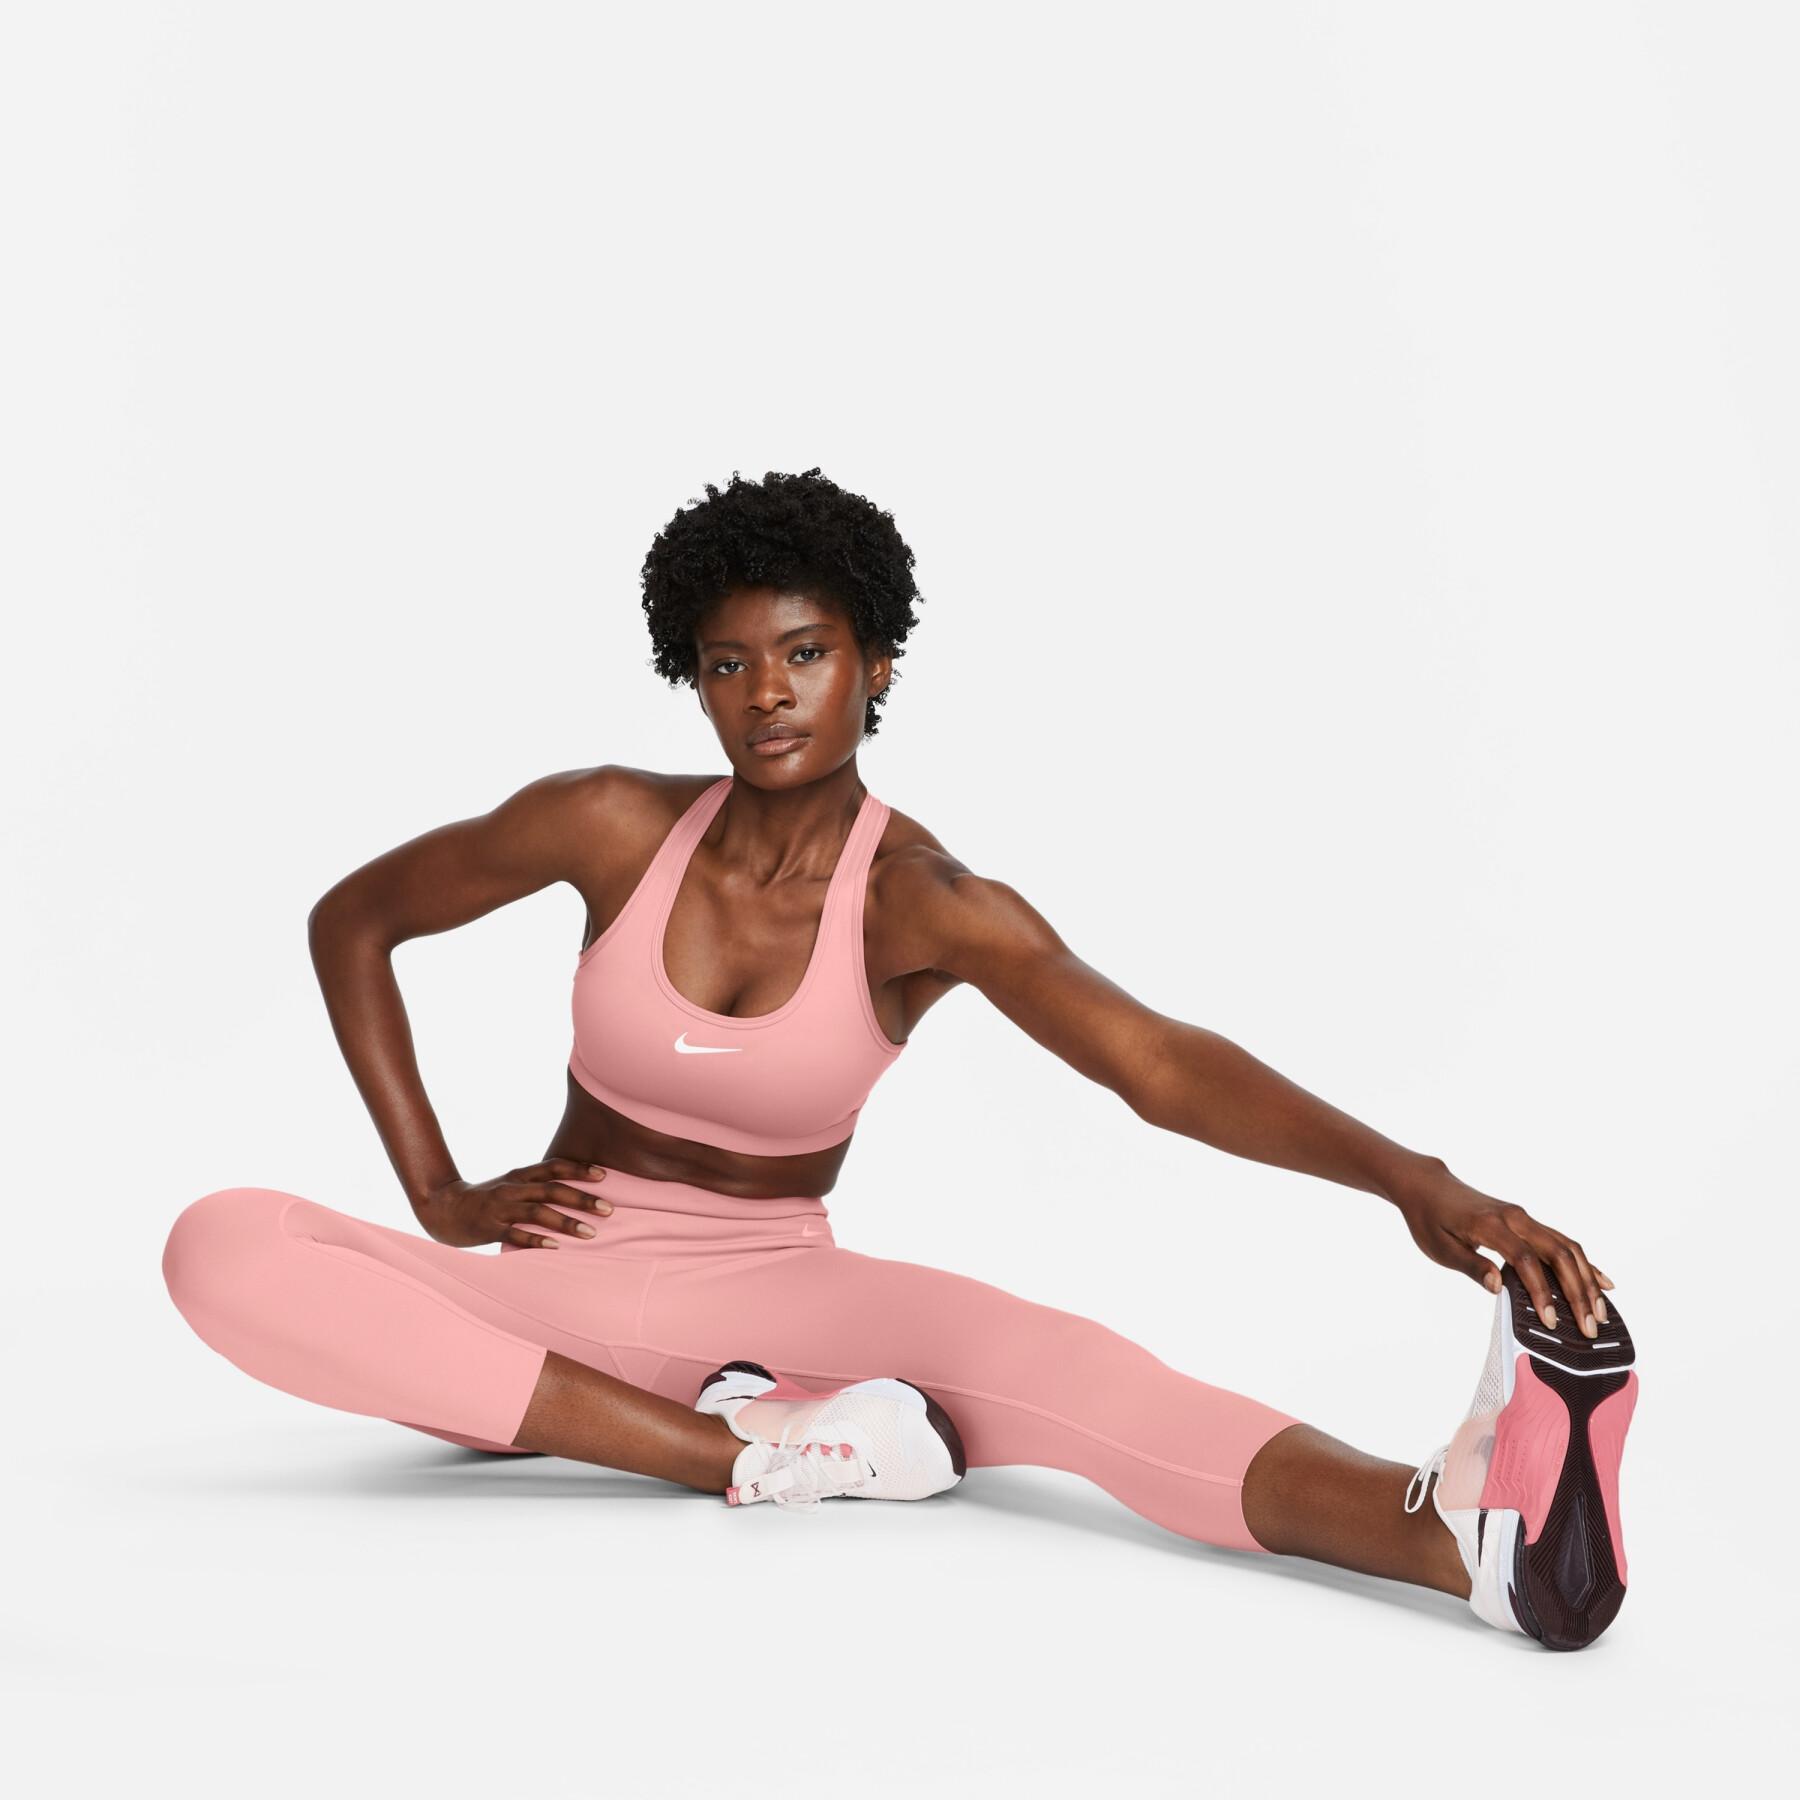 Brassière femme Nike Swoosh Medium Support - Vêtements - Textile